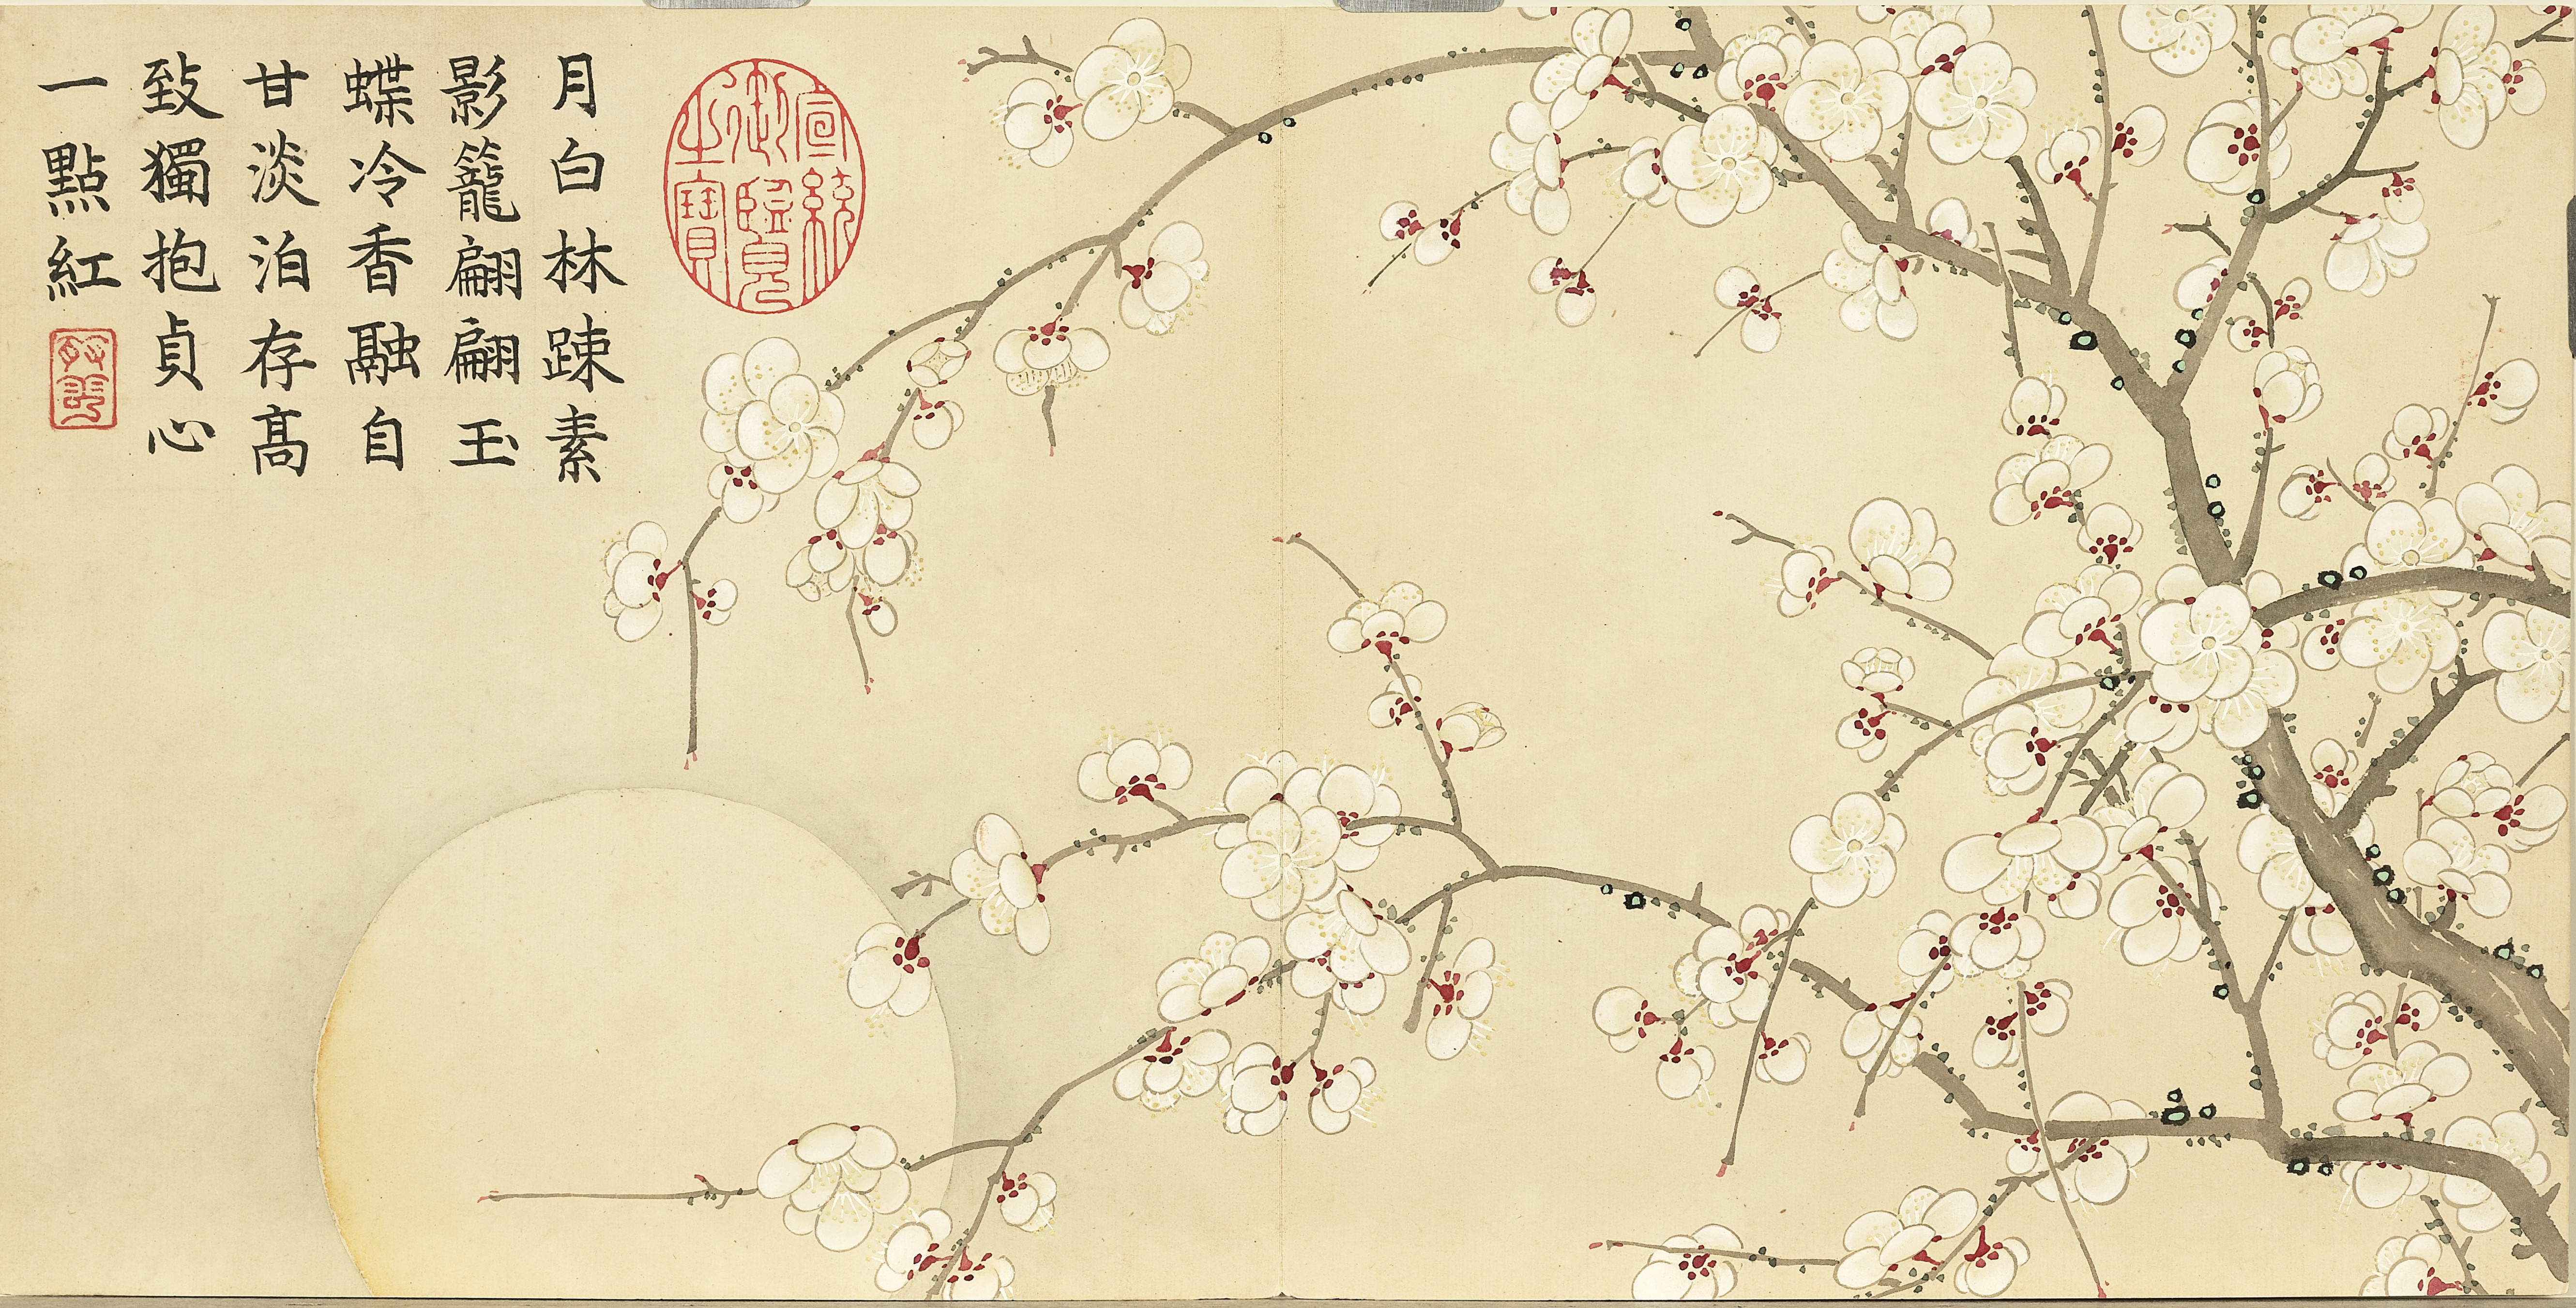 Plum Blossom Artwork Kanji 5322x2702